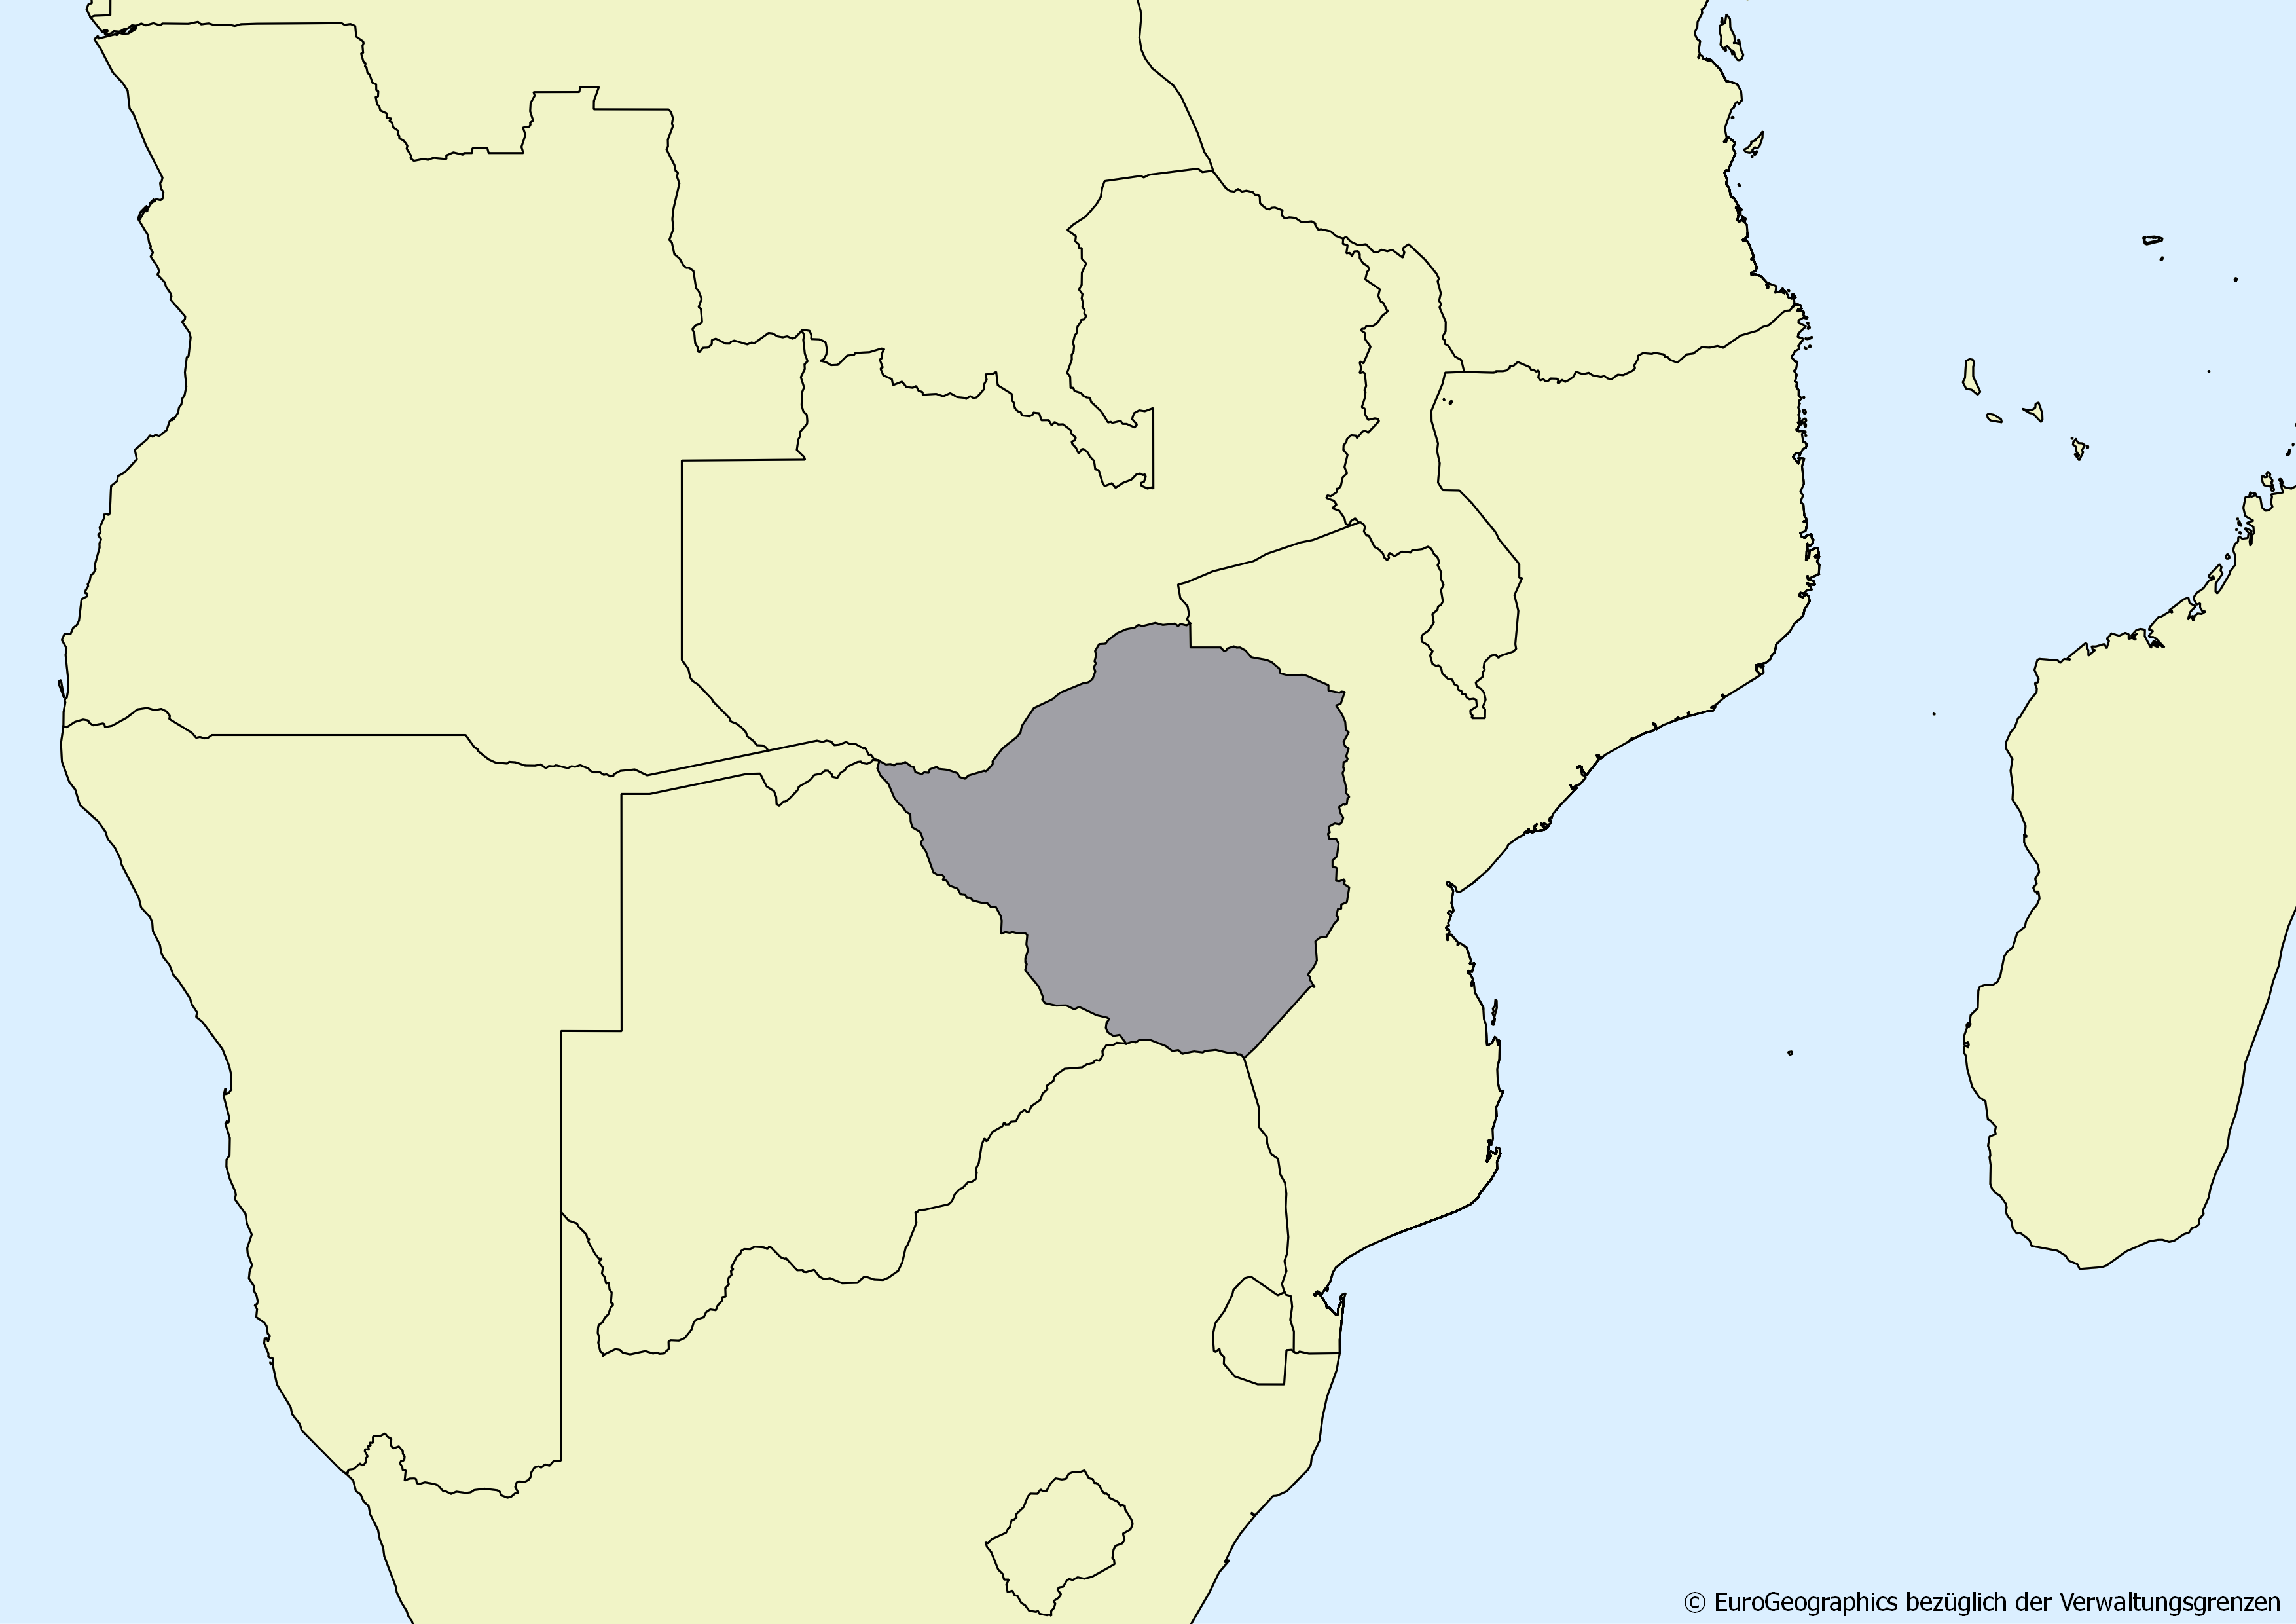 Ausschnitt einer Karte des afrikanischen Kontinents mit Ländergrenzen. Im Zentrum steht Simbabwe grau hervorgehoben